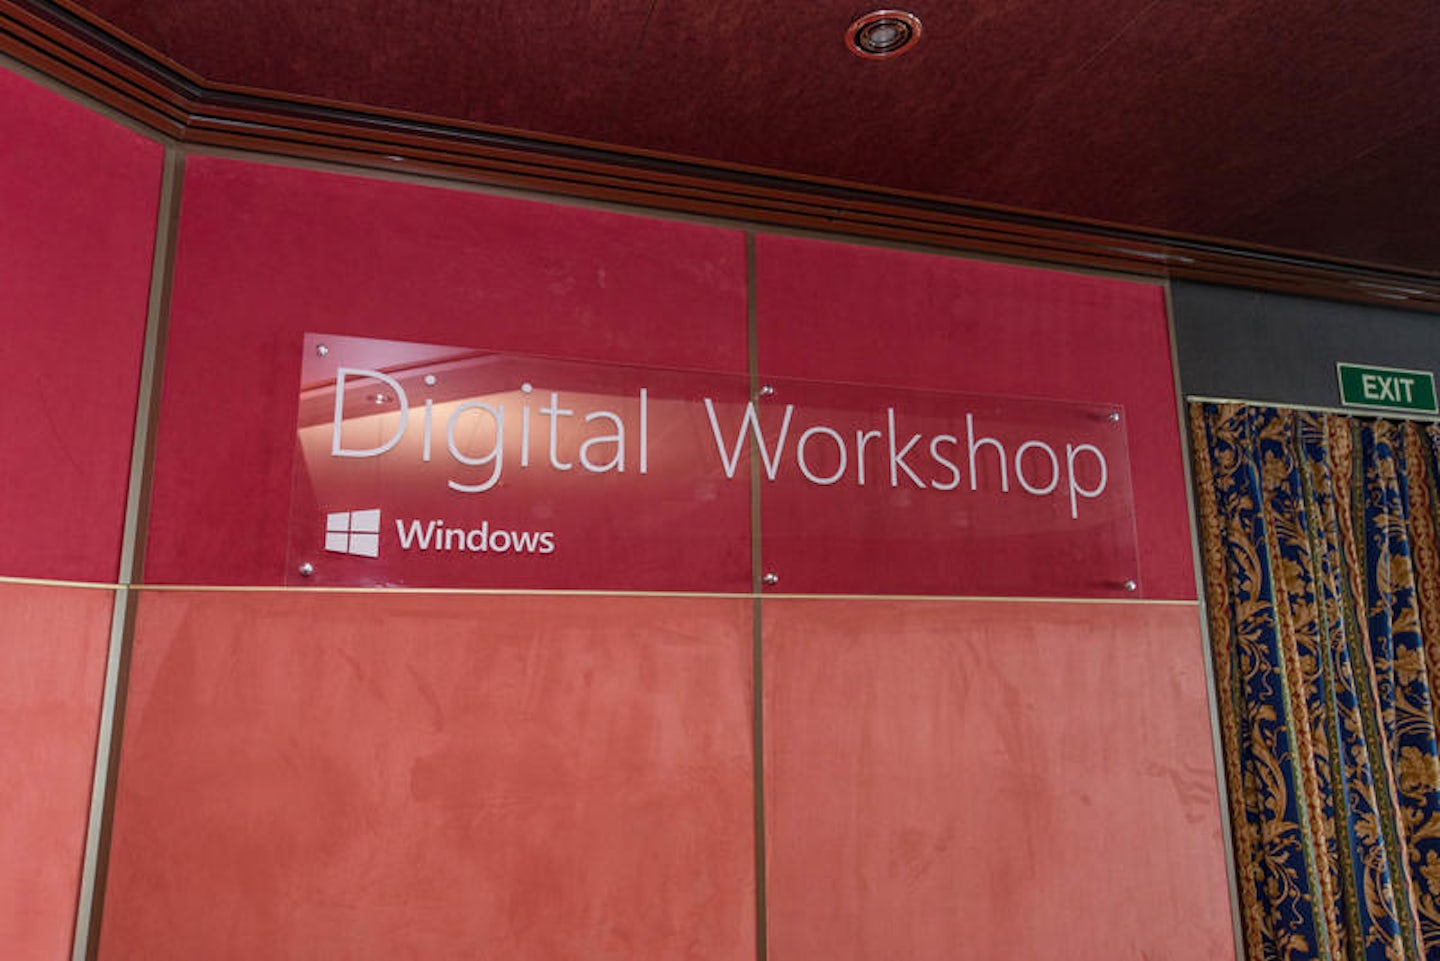 Digital Workshop on Noordam